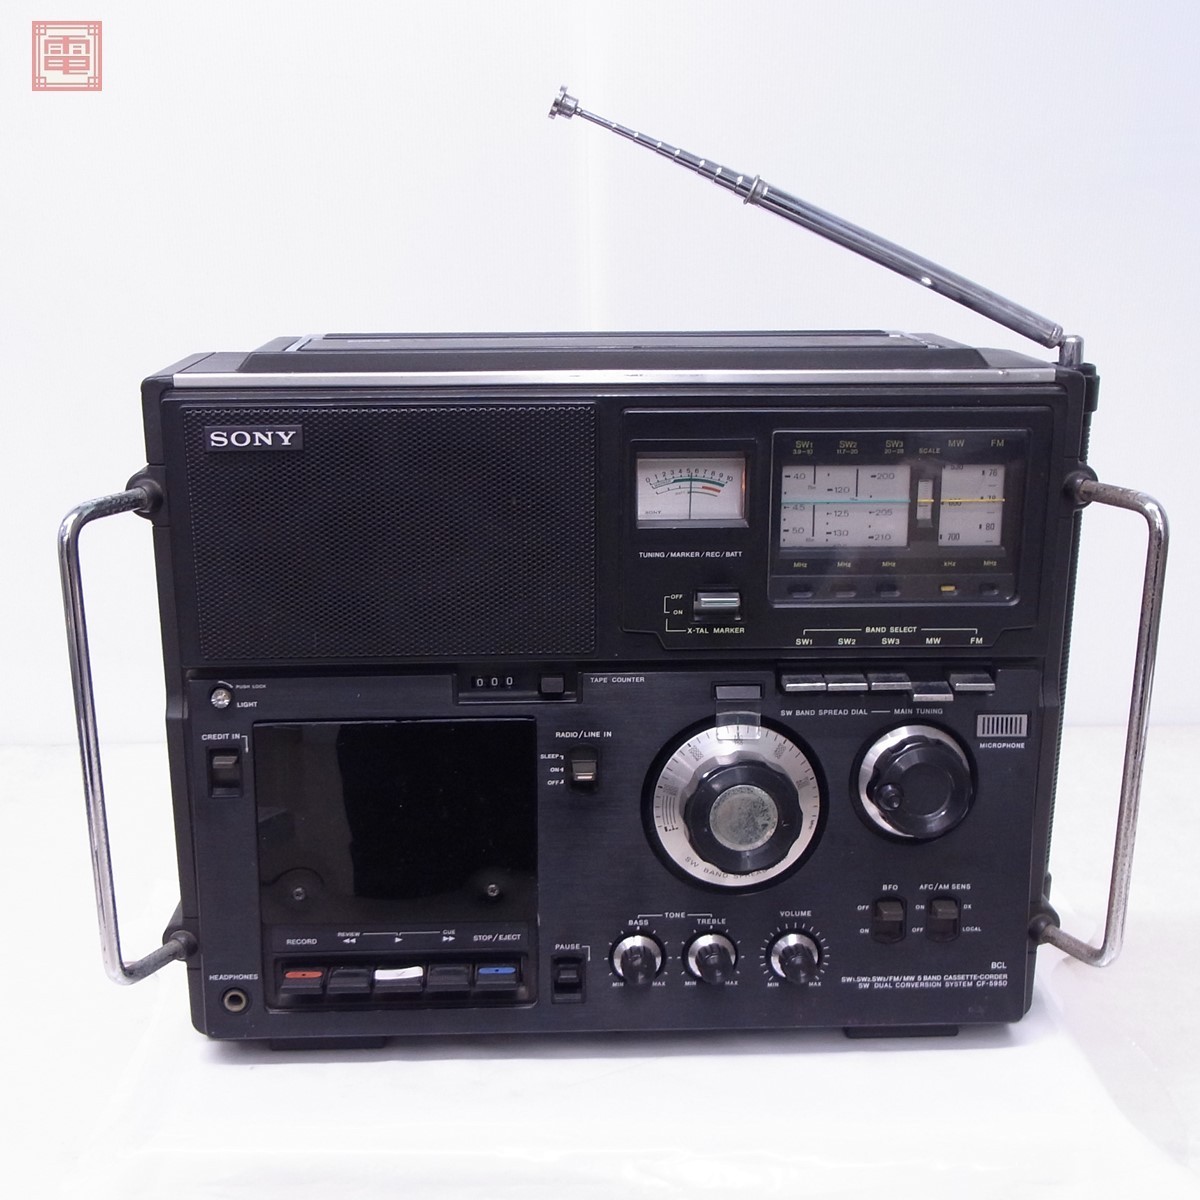 Sony Sky sensor CF-5950 AM/FM/SW BCL radio radio-cassette SONY